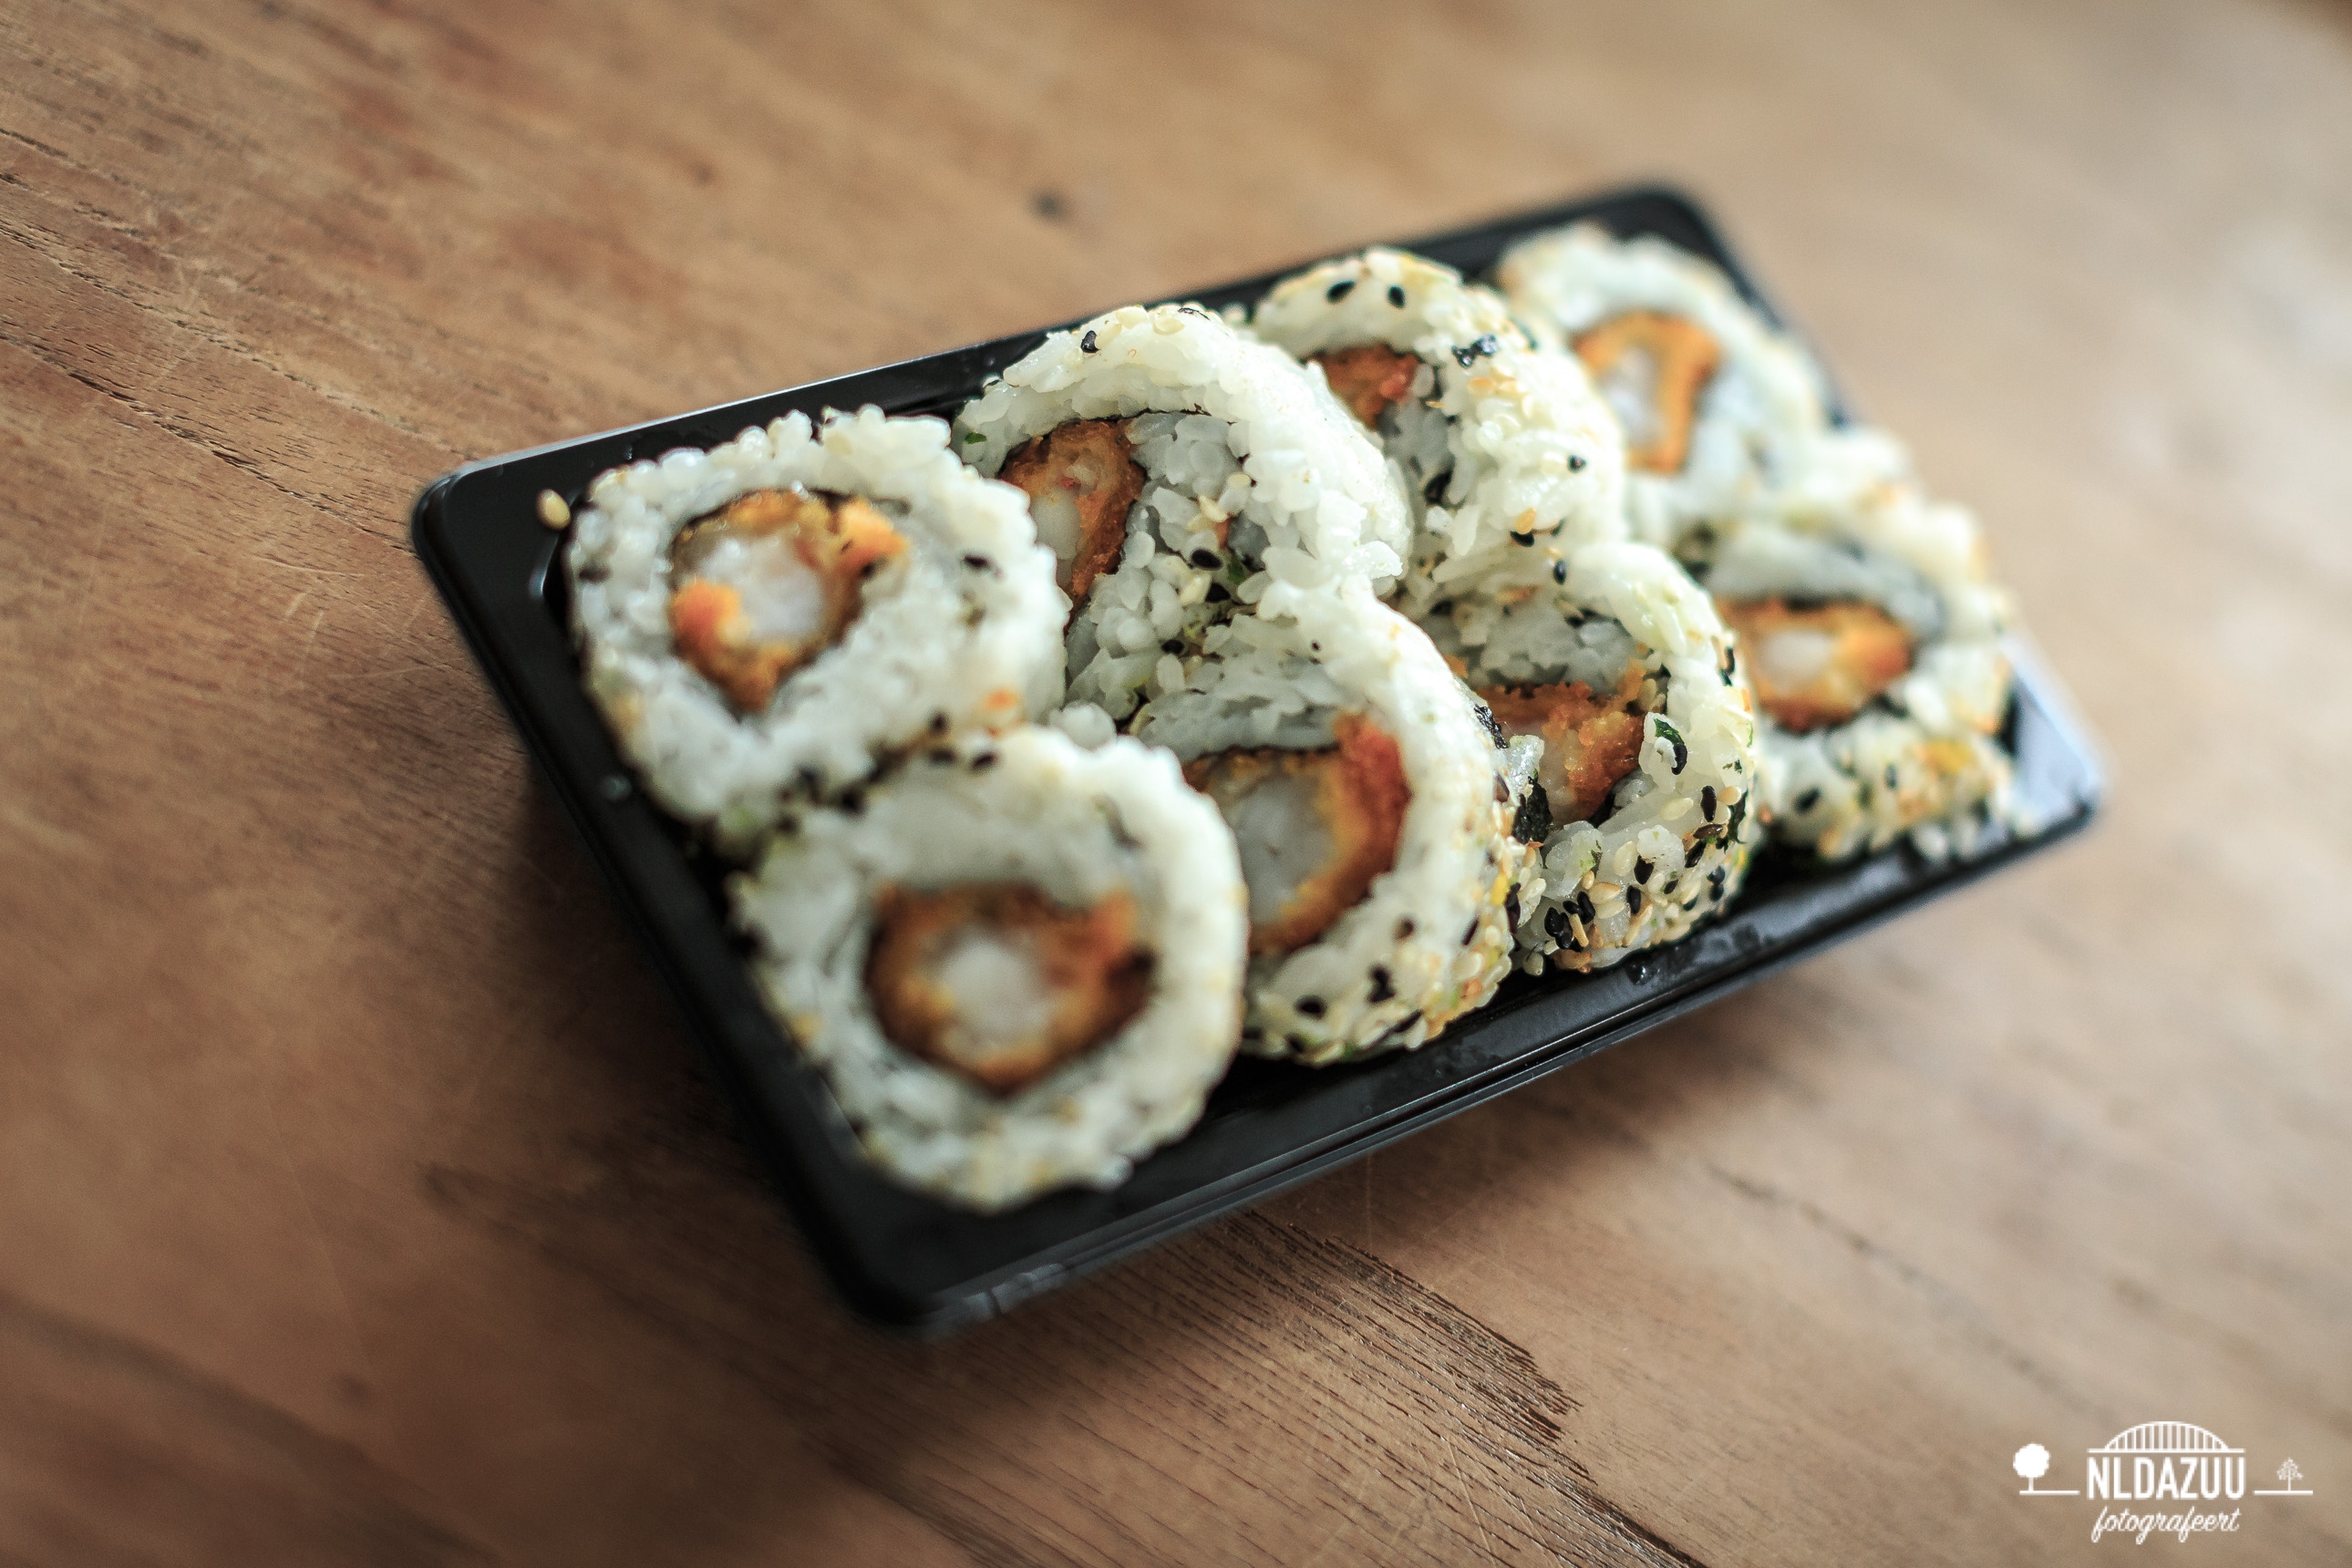 Dag 36 nldazuu 50 mm. challenge: Sushi